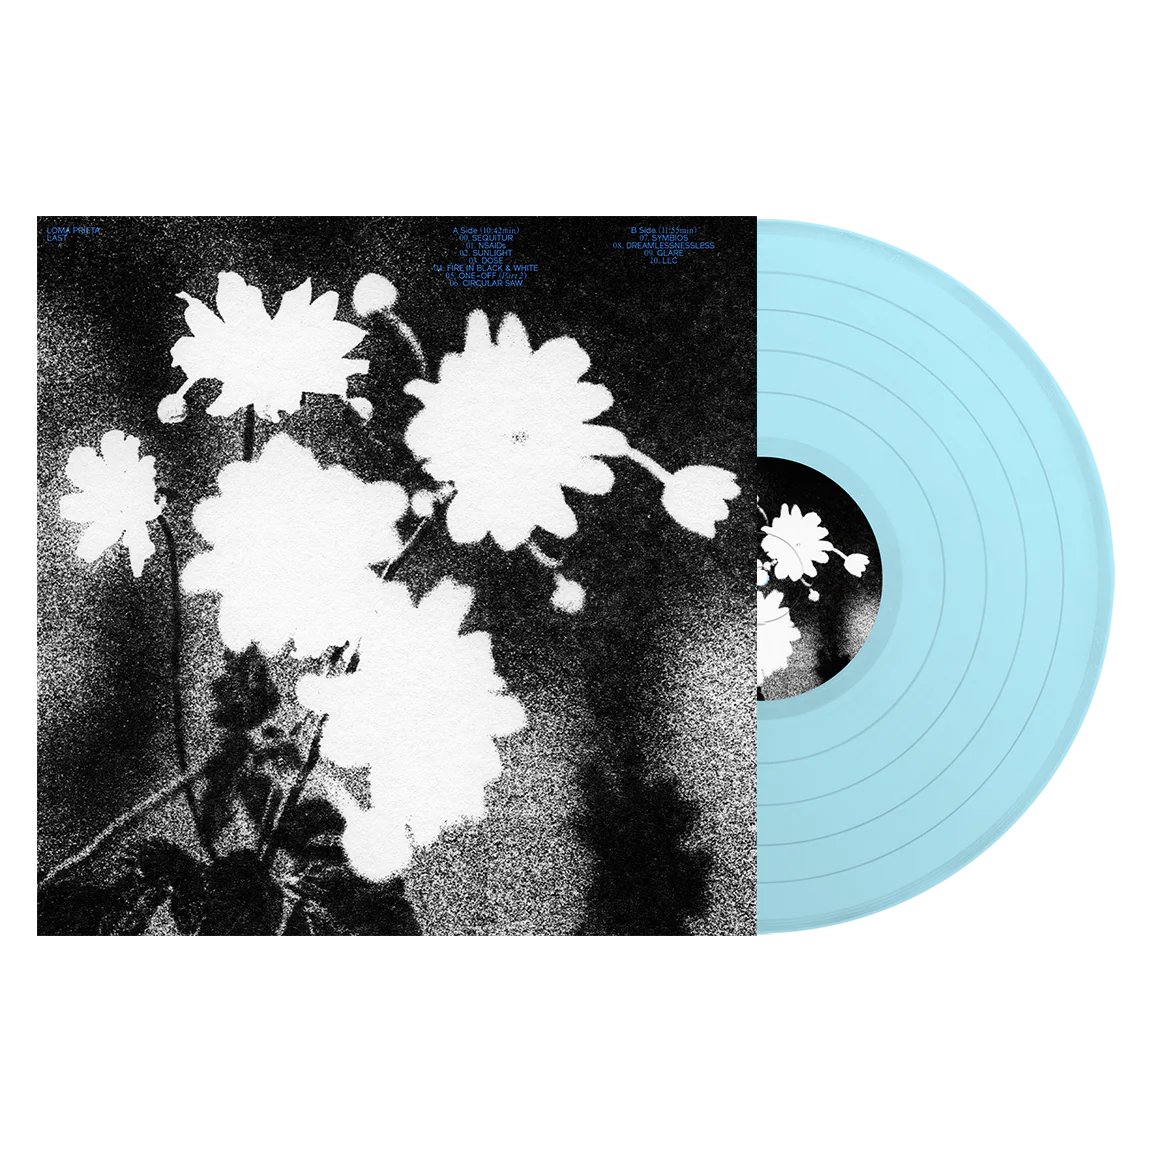 Loma Prieta - Last (Limited Edition on Baby Blue Vinyl)